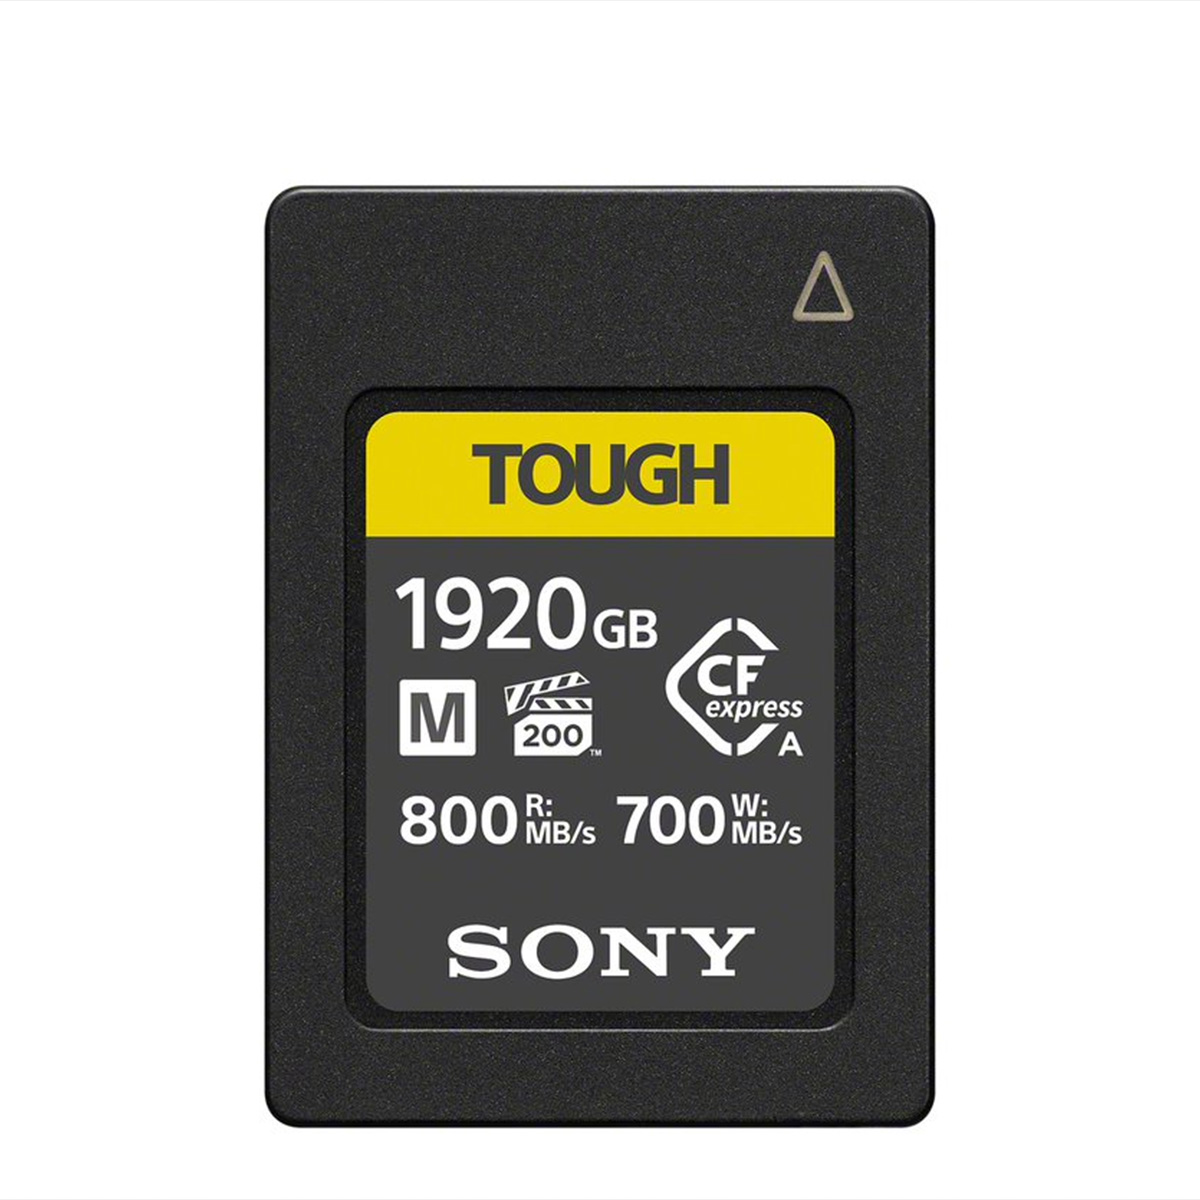 Sony 1920 GB CFexpress Tough G Typ A